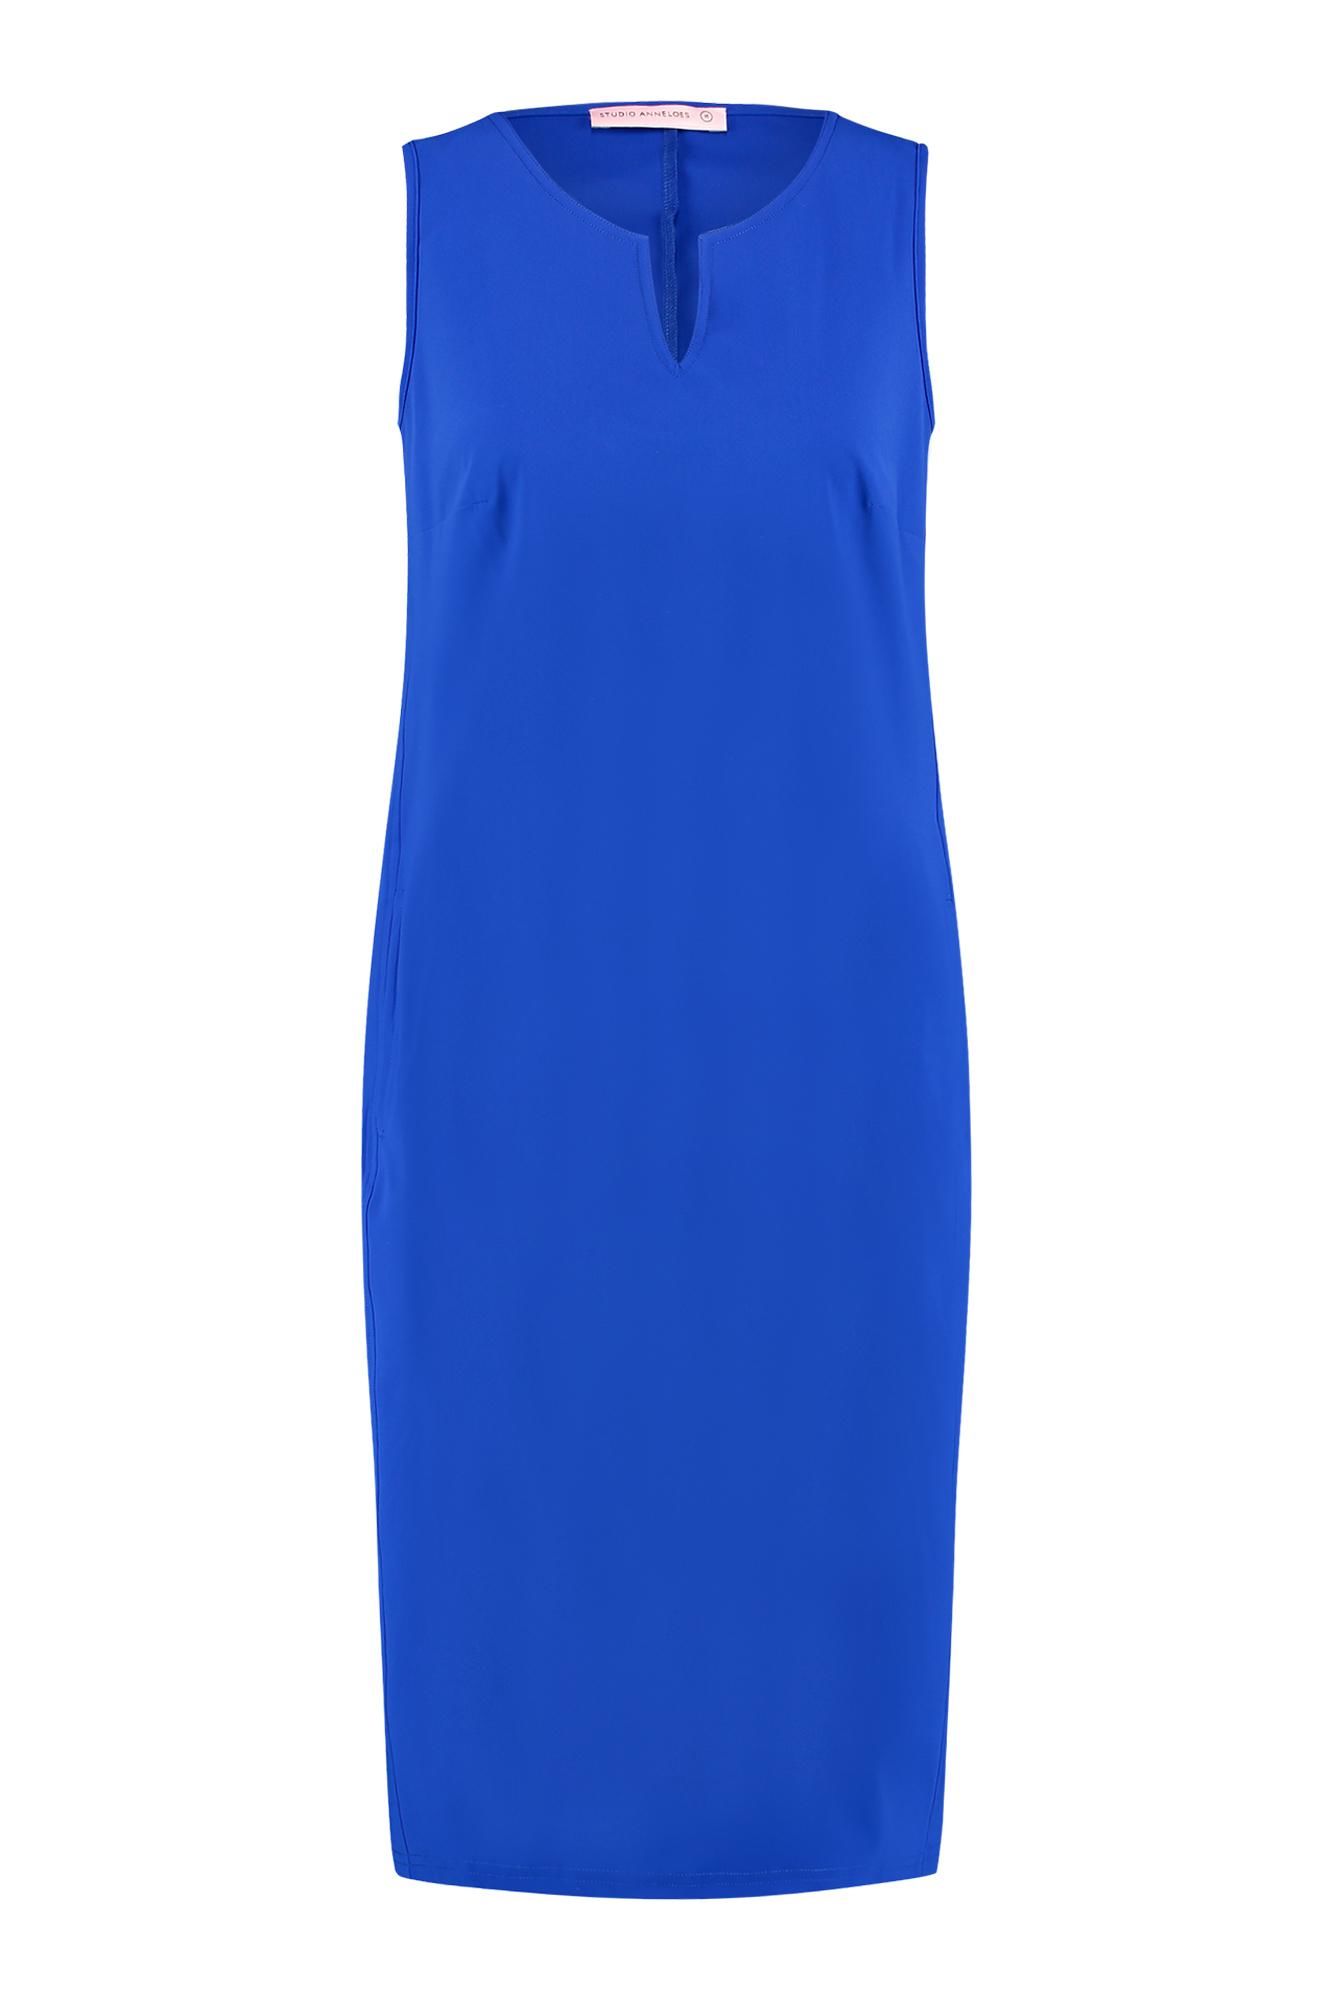 Behoren Ligatie afschaffen Studio Anneloes - Simplicity SL dress royal blue online kopen bij Fier  Mode. 04678-6500 royal blu